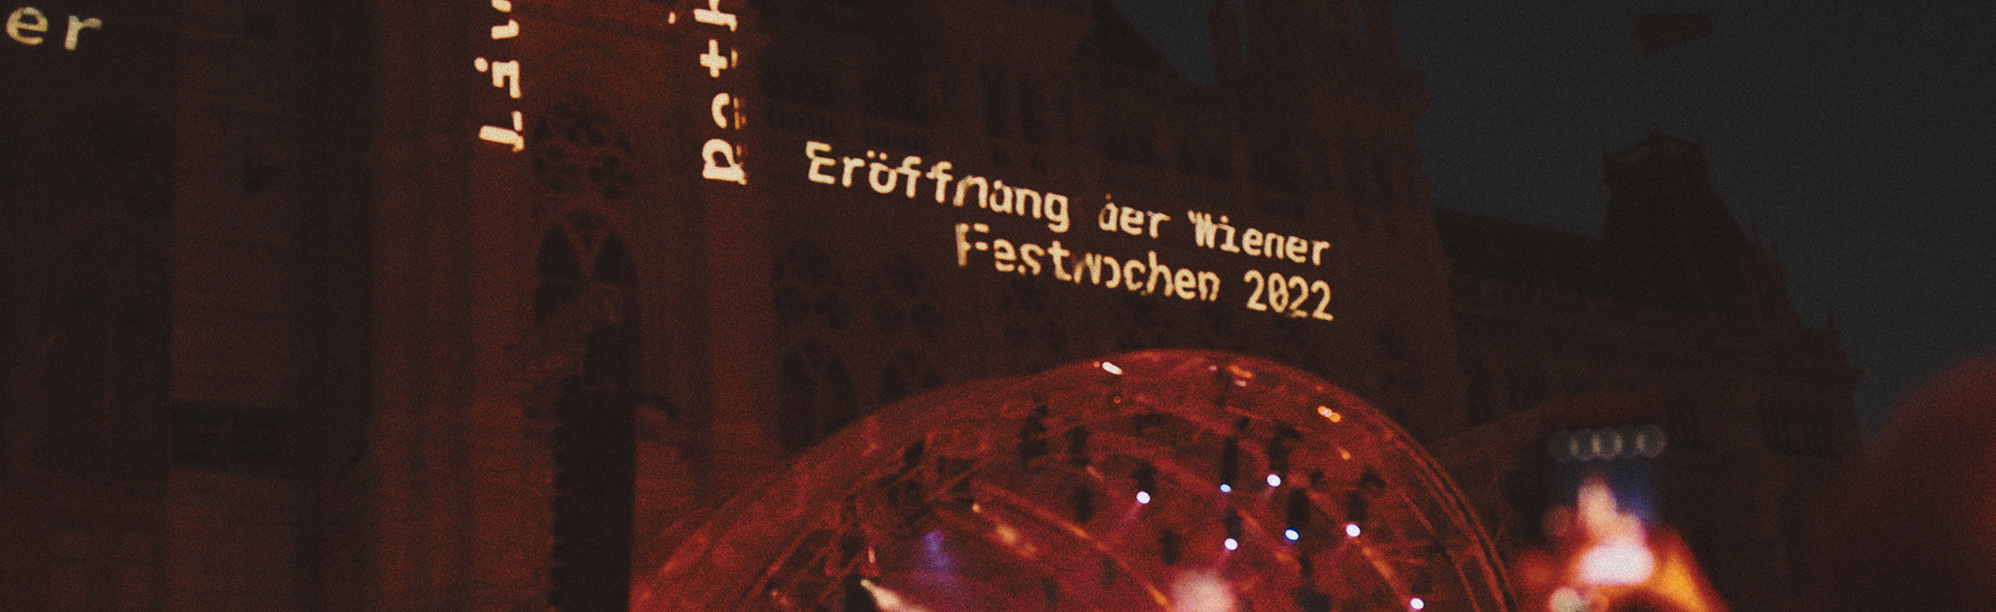 Eröffnung Wiener Festwochen 2022